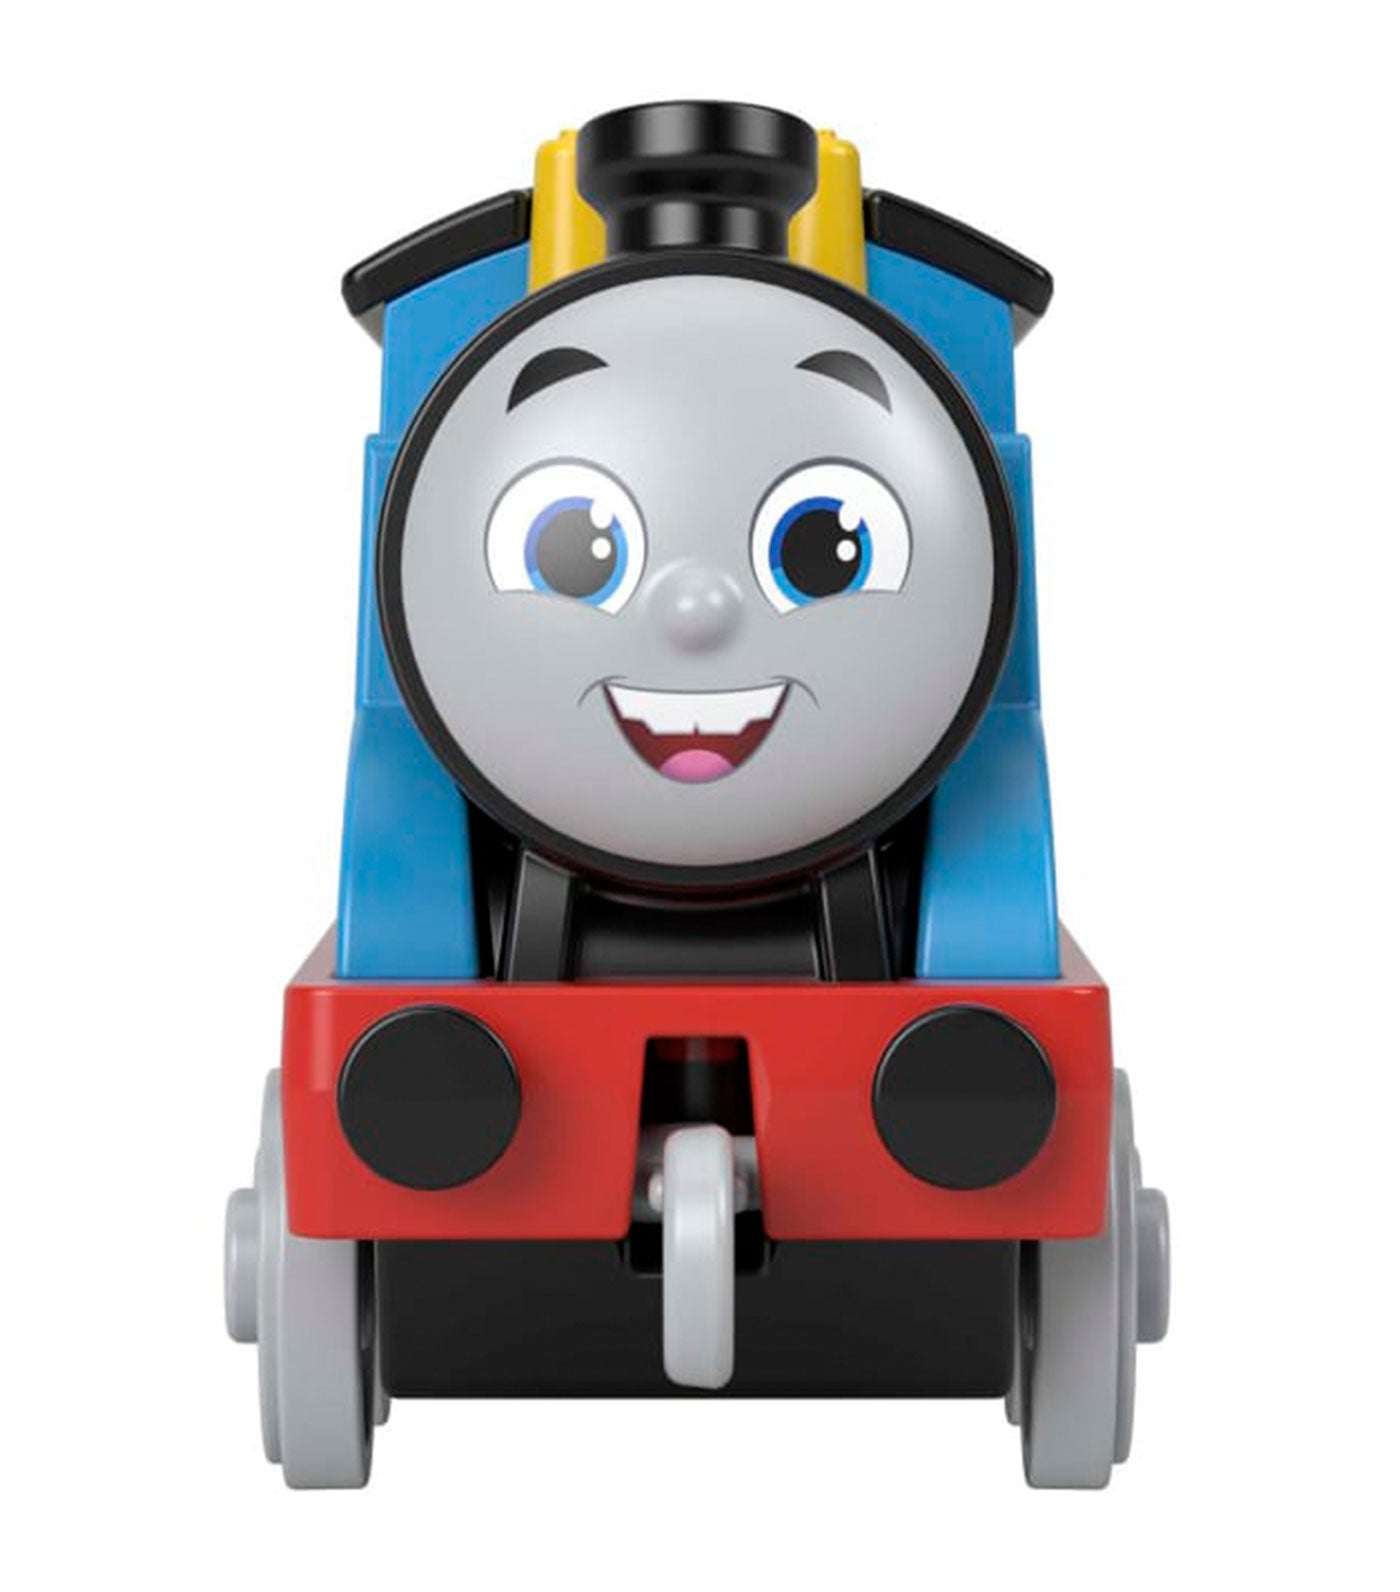  Thomas & Friends Diecast Metal Push-Along Train - Thomas